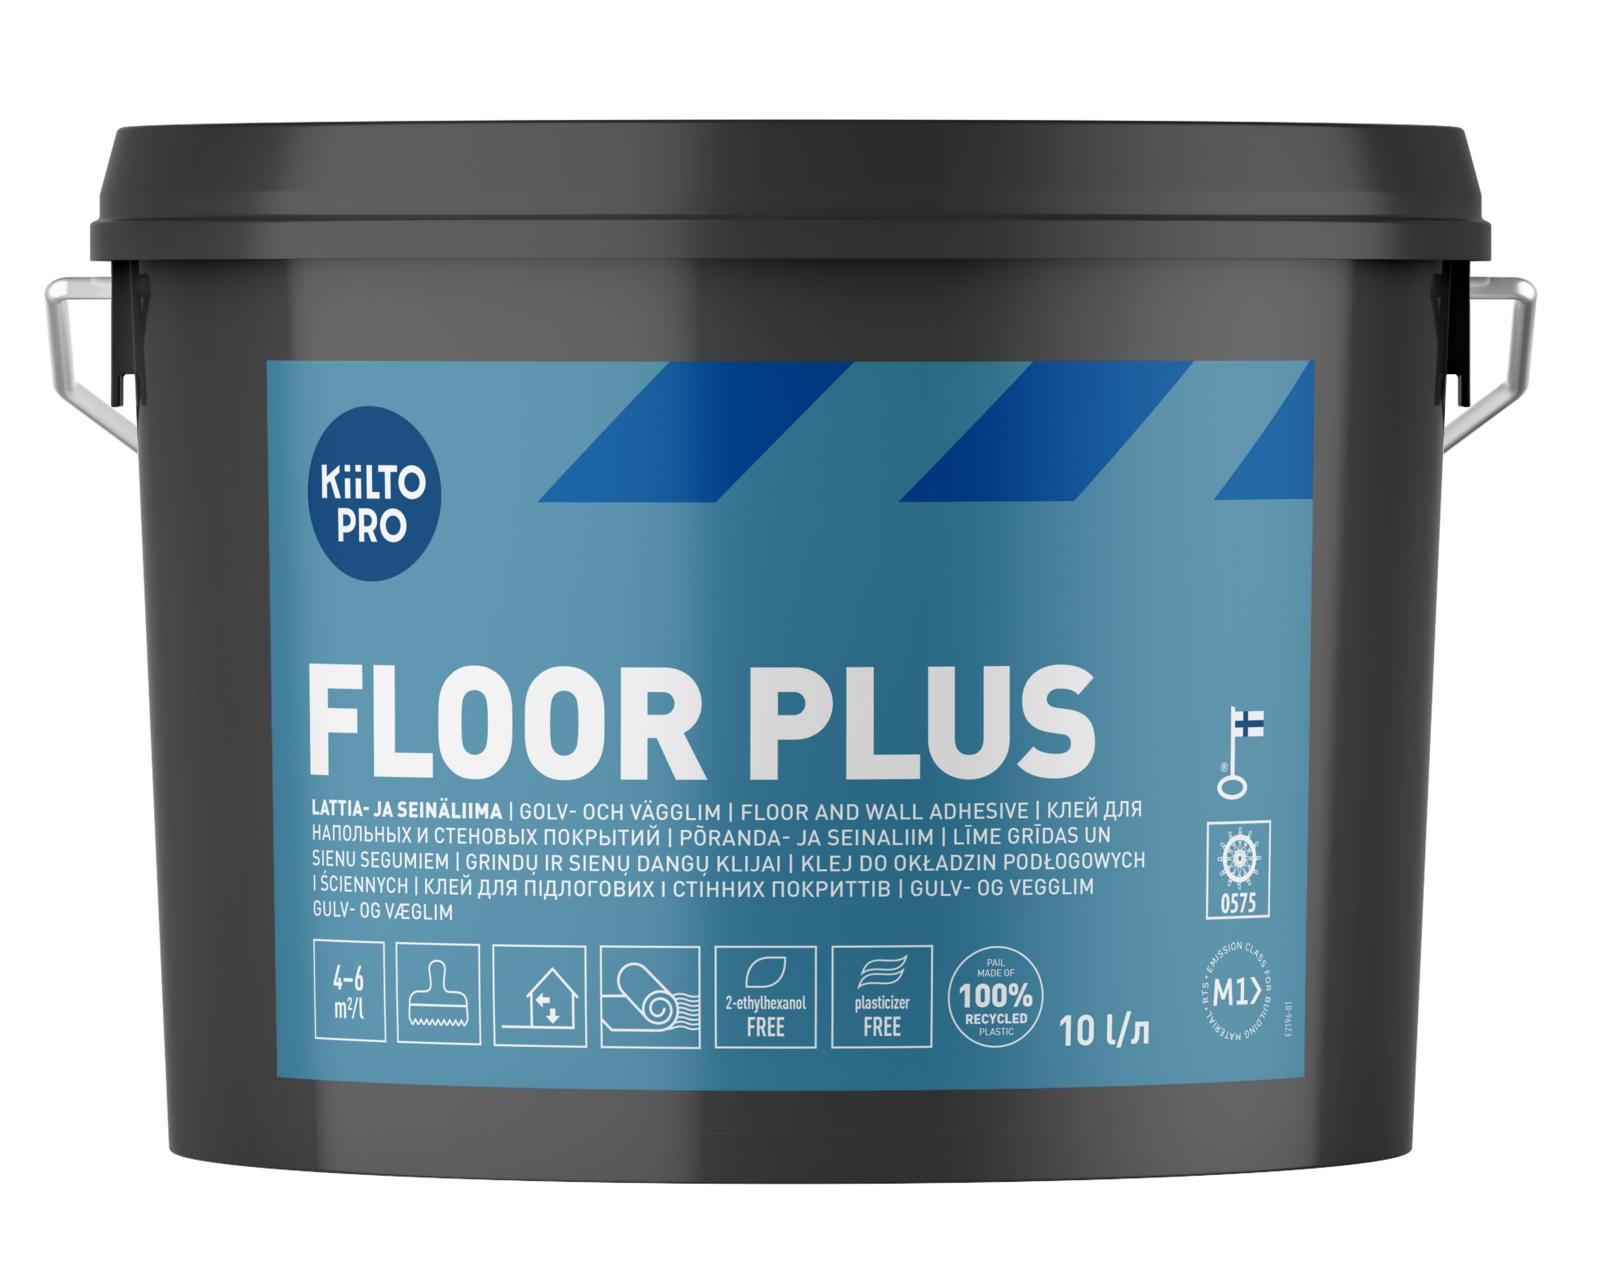 Kiilto Floor Plus lattia- ja seinäliima